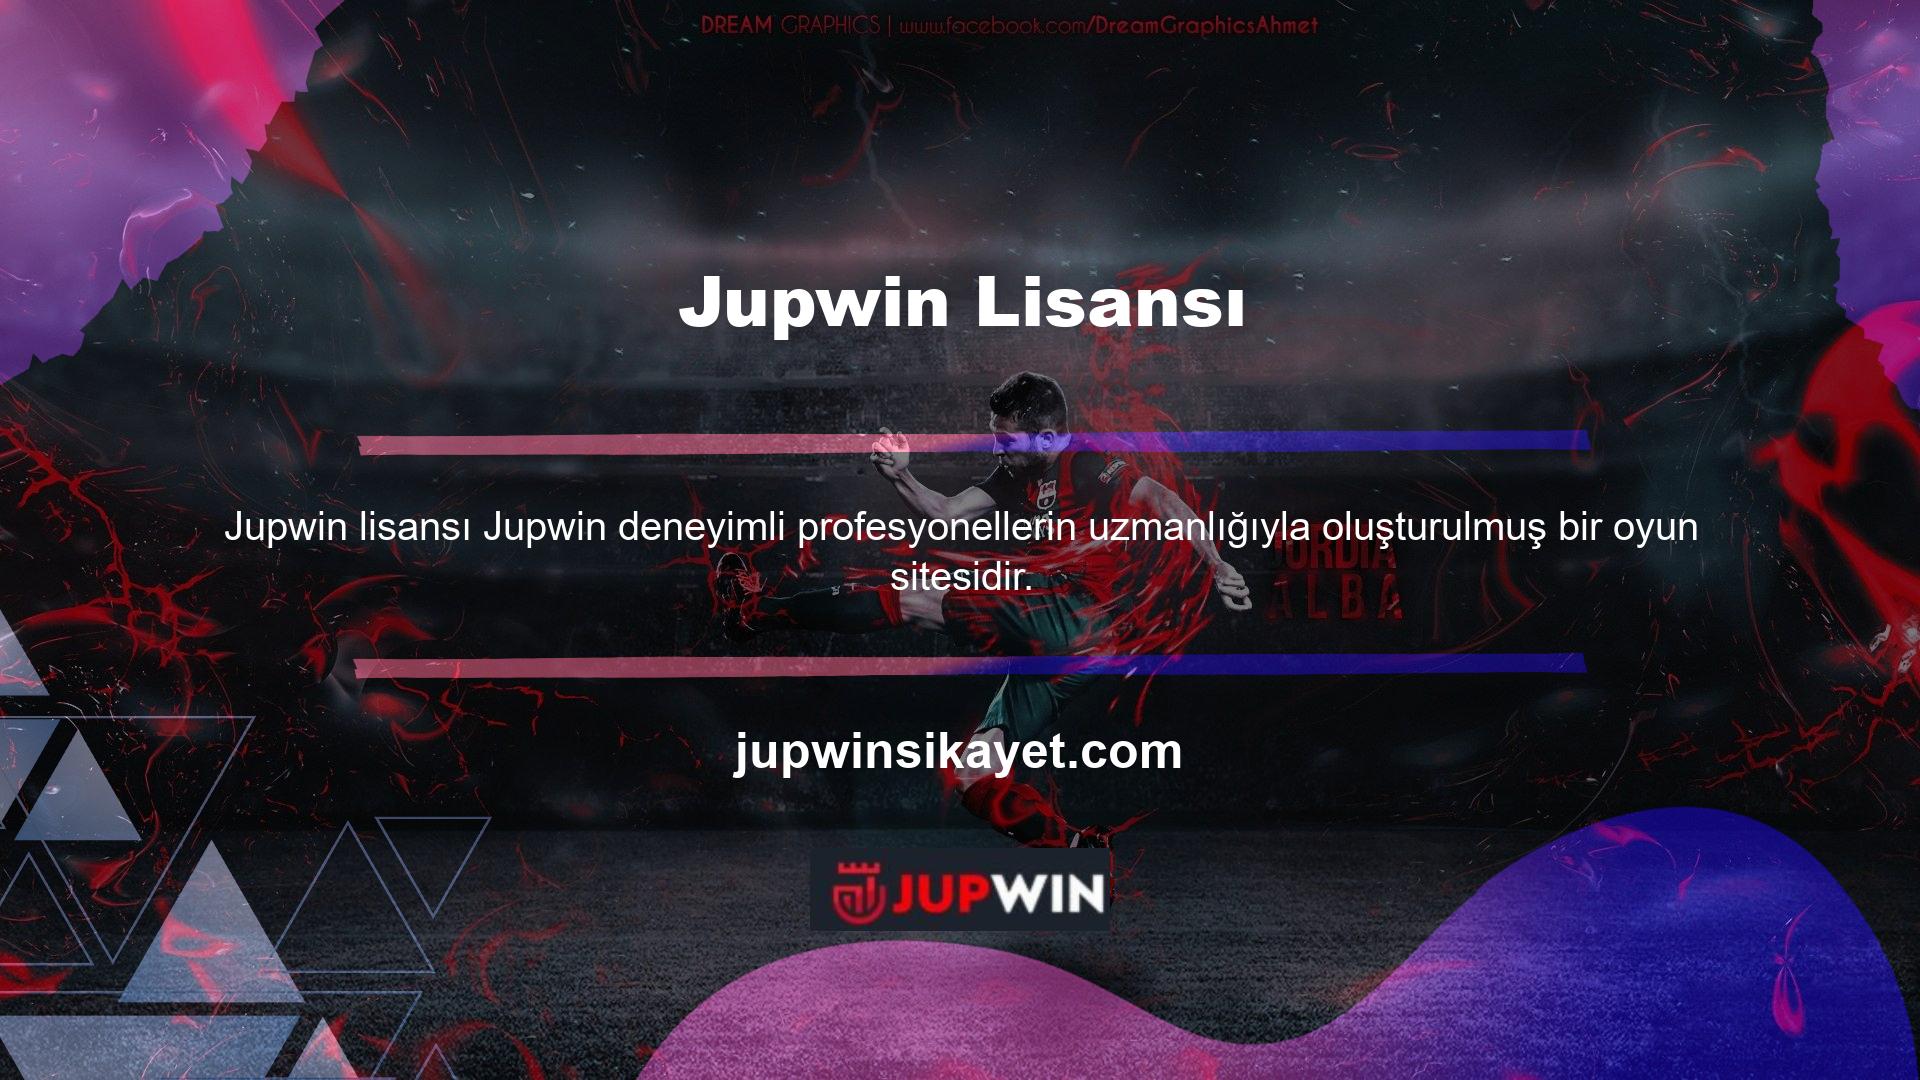 Jupwin Gaming, mükemmelliğini birçok alanda kanıtlamış olan bu oyunu tüm video oyunu severlere sunarak kendisini diğer oyun platformlarından ayırıyor